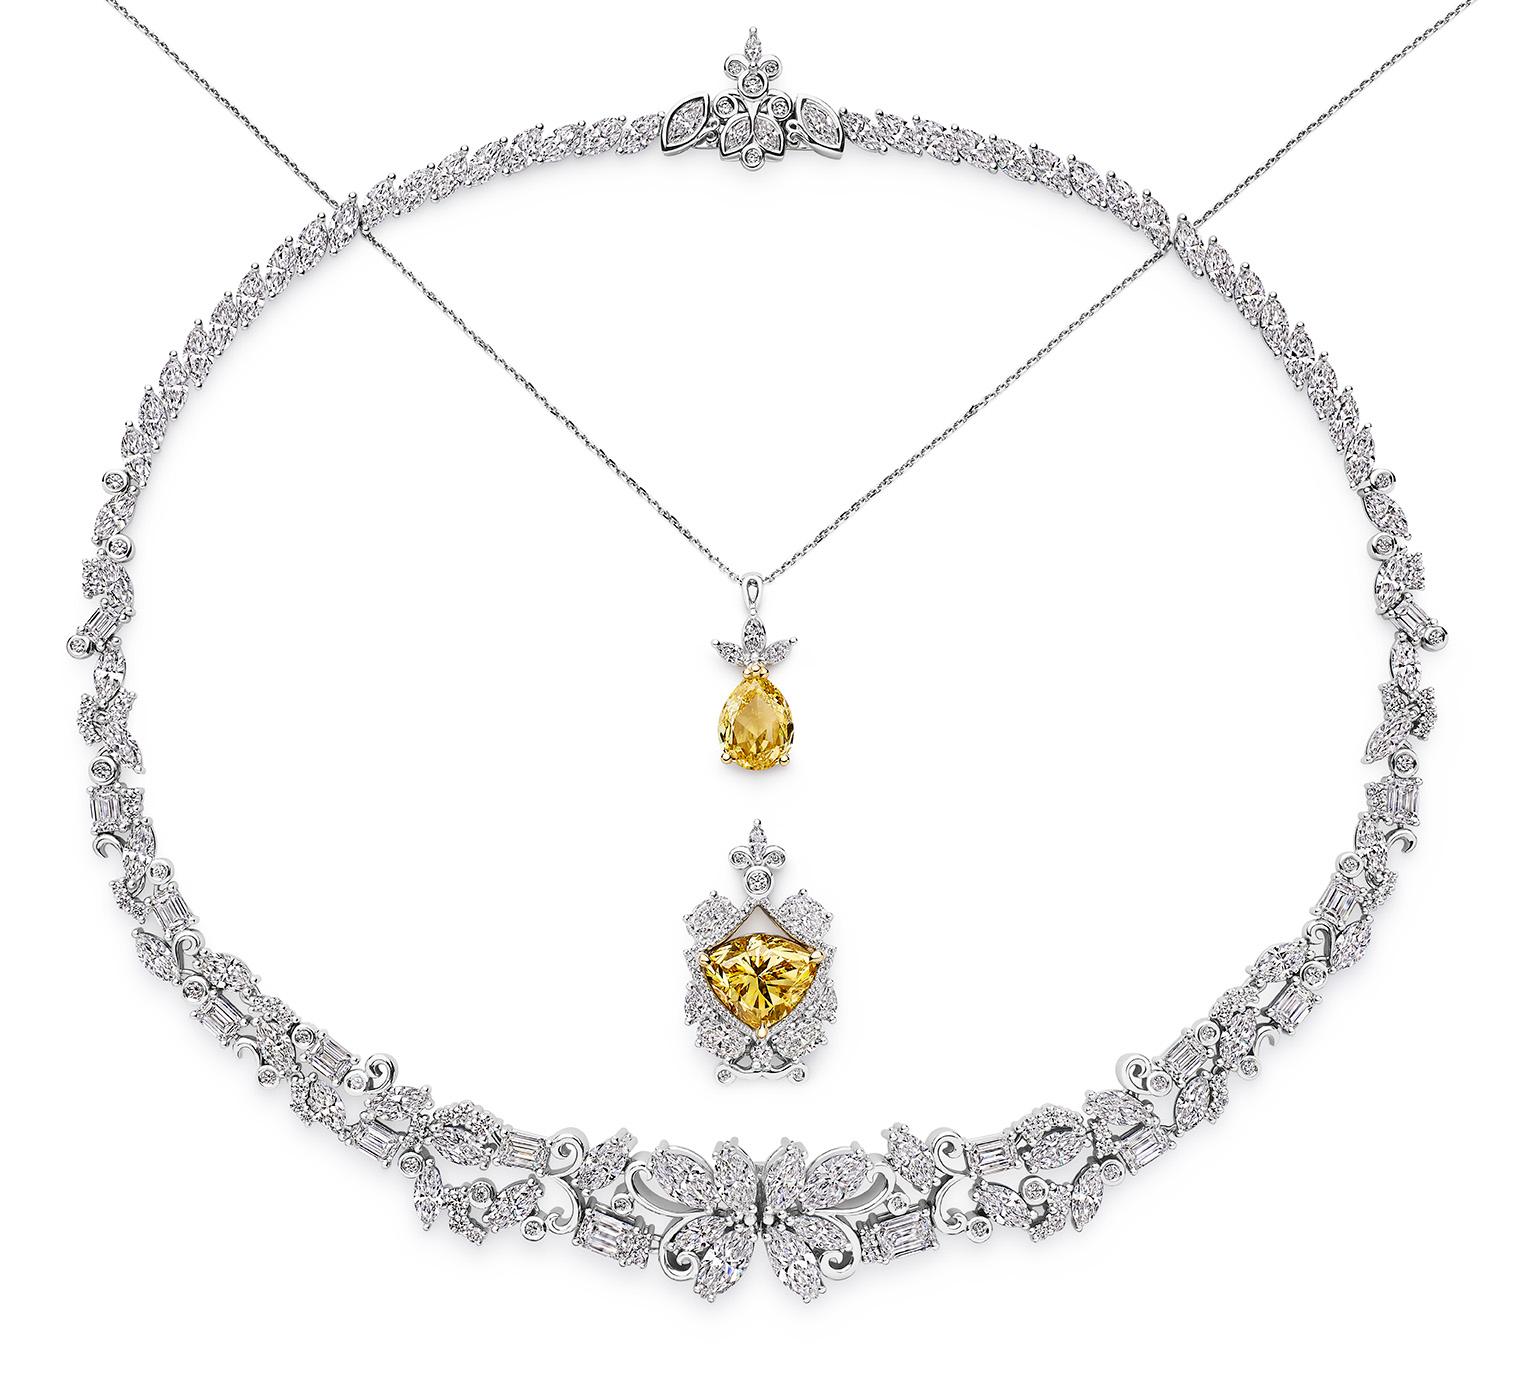 Das spektakuläre Coeur de Mazarin-Halsband besteht aus zwei GIA-zertifizierten Fancy Vivid Yellow-Diamanten kanadischen Ursprungs, die in Australien poliert wurden.  Ein 7,45ct Vs1 Modifizierter Dreieckiger Brillantschliff und ein 3,40ct Birne